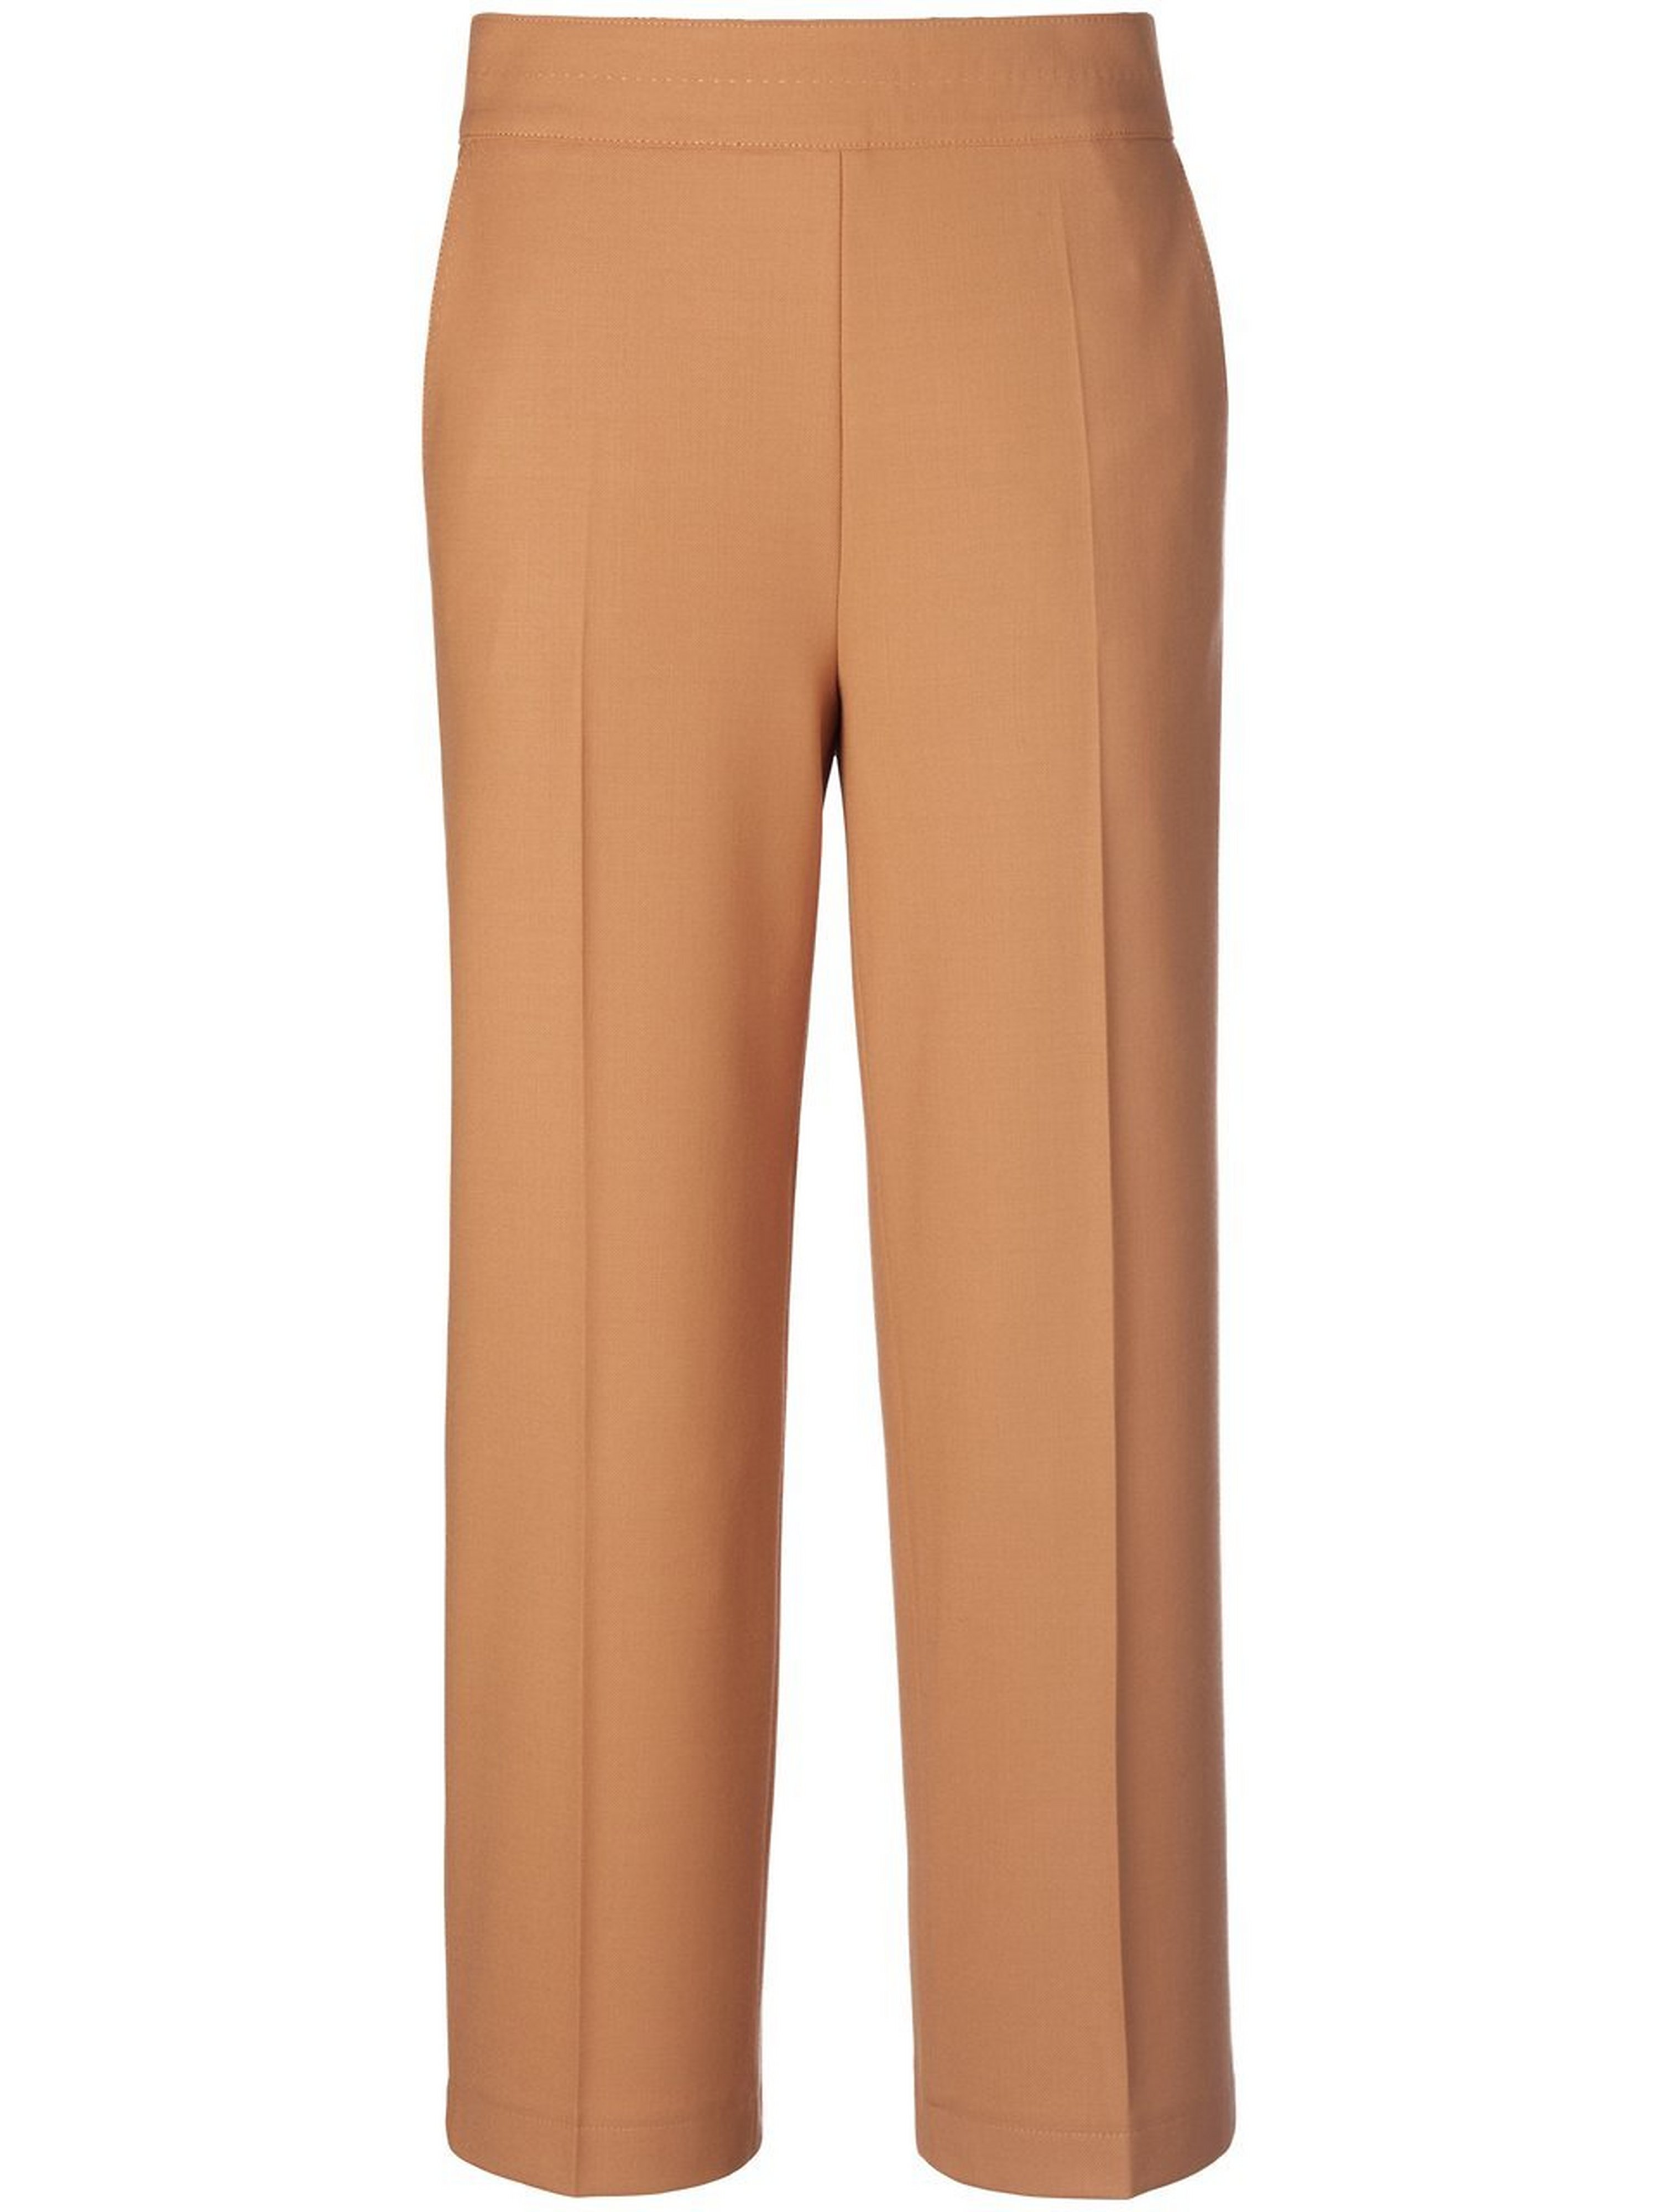 Le pantalon laine extensible  BASLER marron taille 48